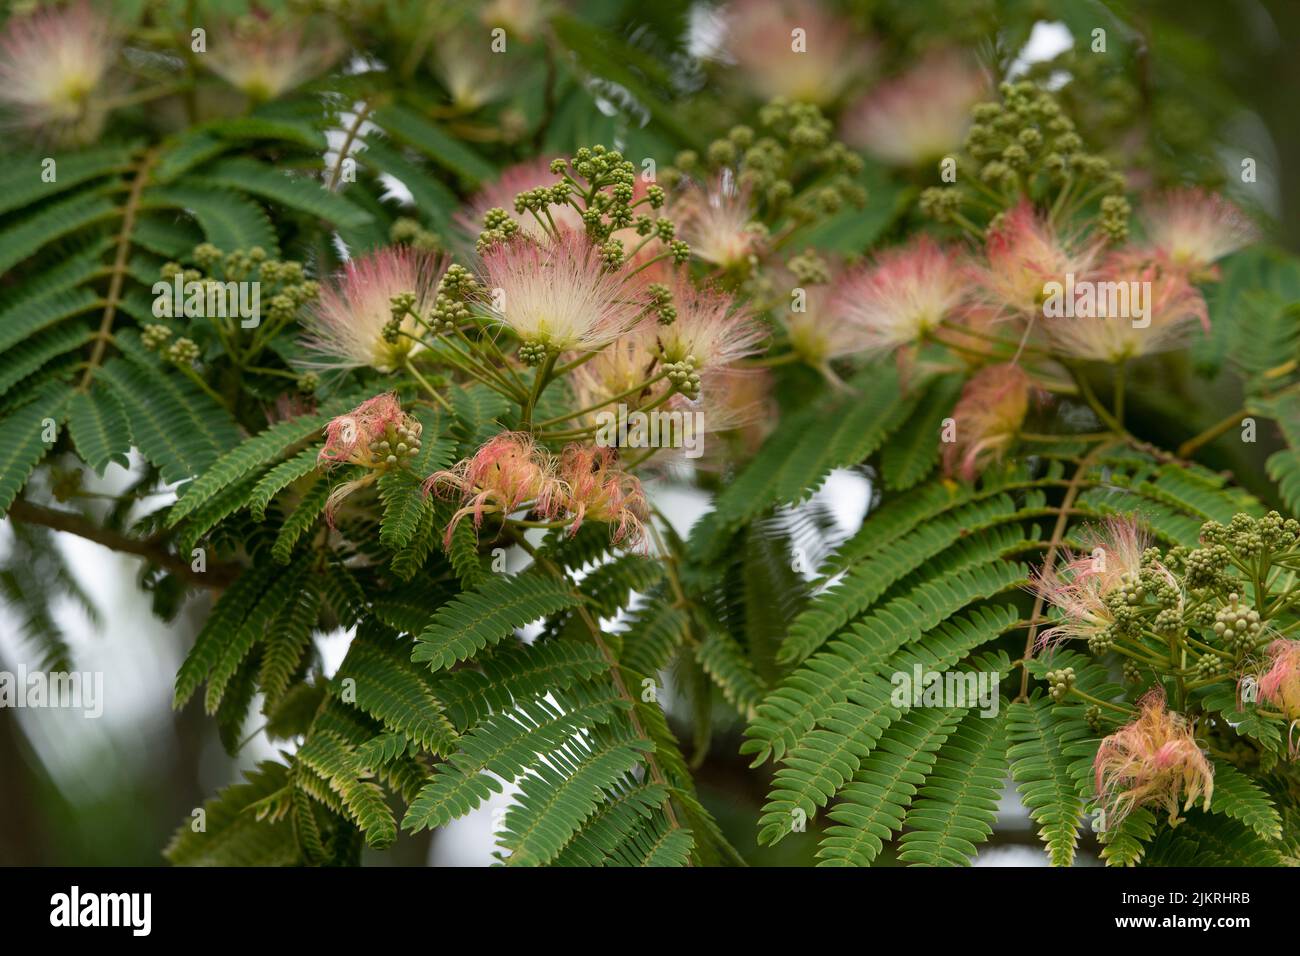 Persian silk , Albizia julibrissin tree Stock Photo